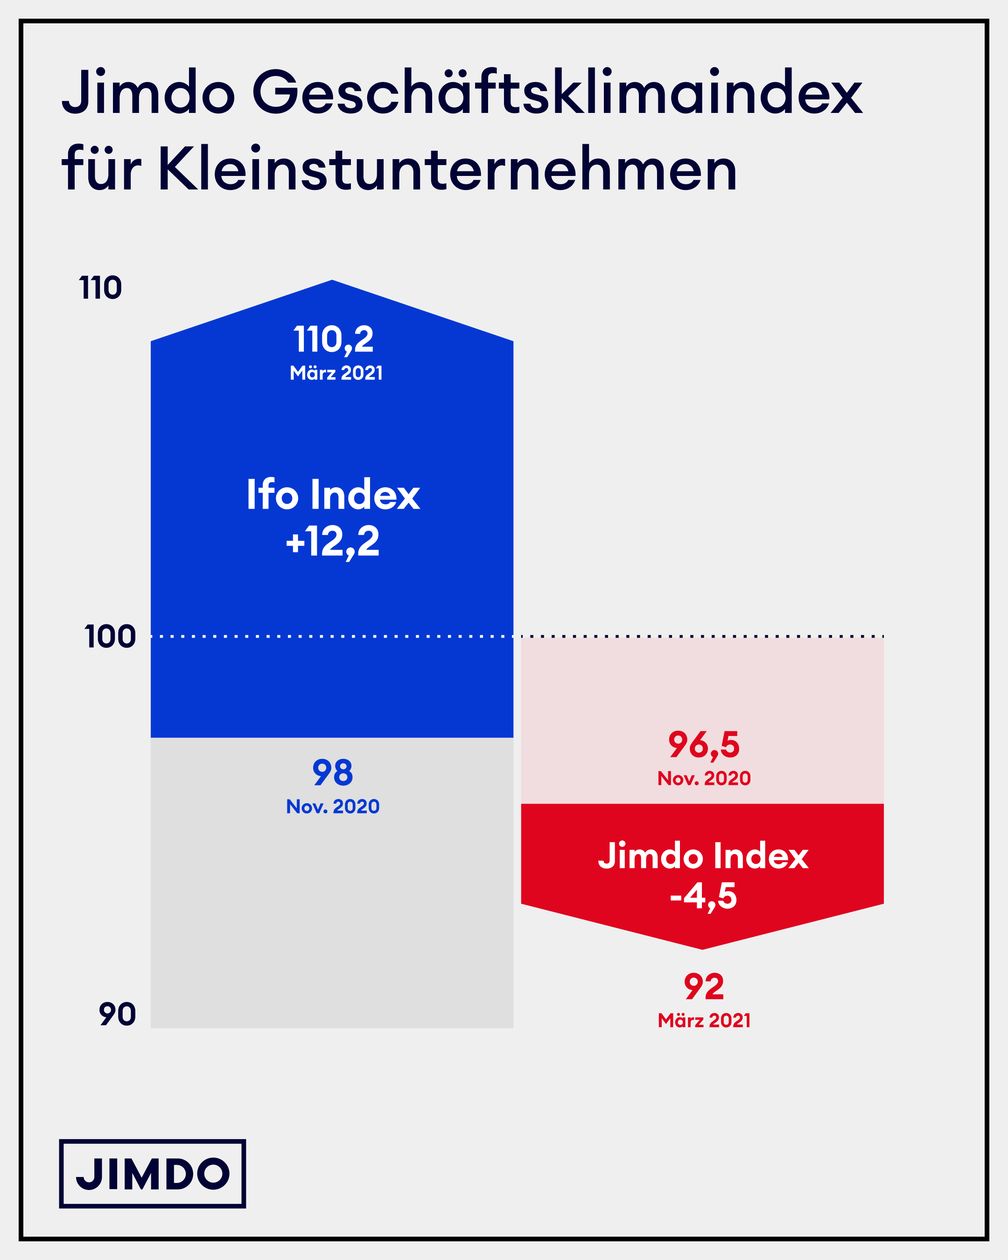 Jimdo Geschäftsklimaindex für Kleinstunternehmen im März 2021 zeigt eine Verschlechterung seit November 2020.  Bild: Jimdo GmbH Fotograf: Jimdo GmbH